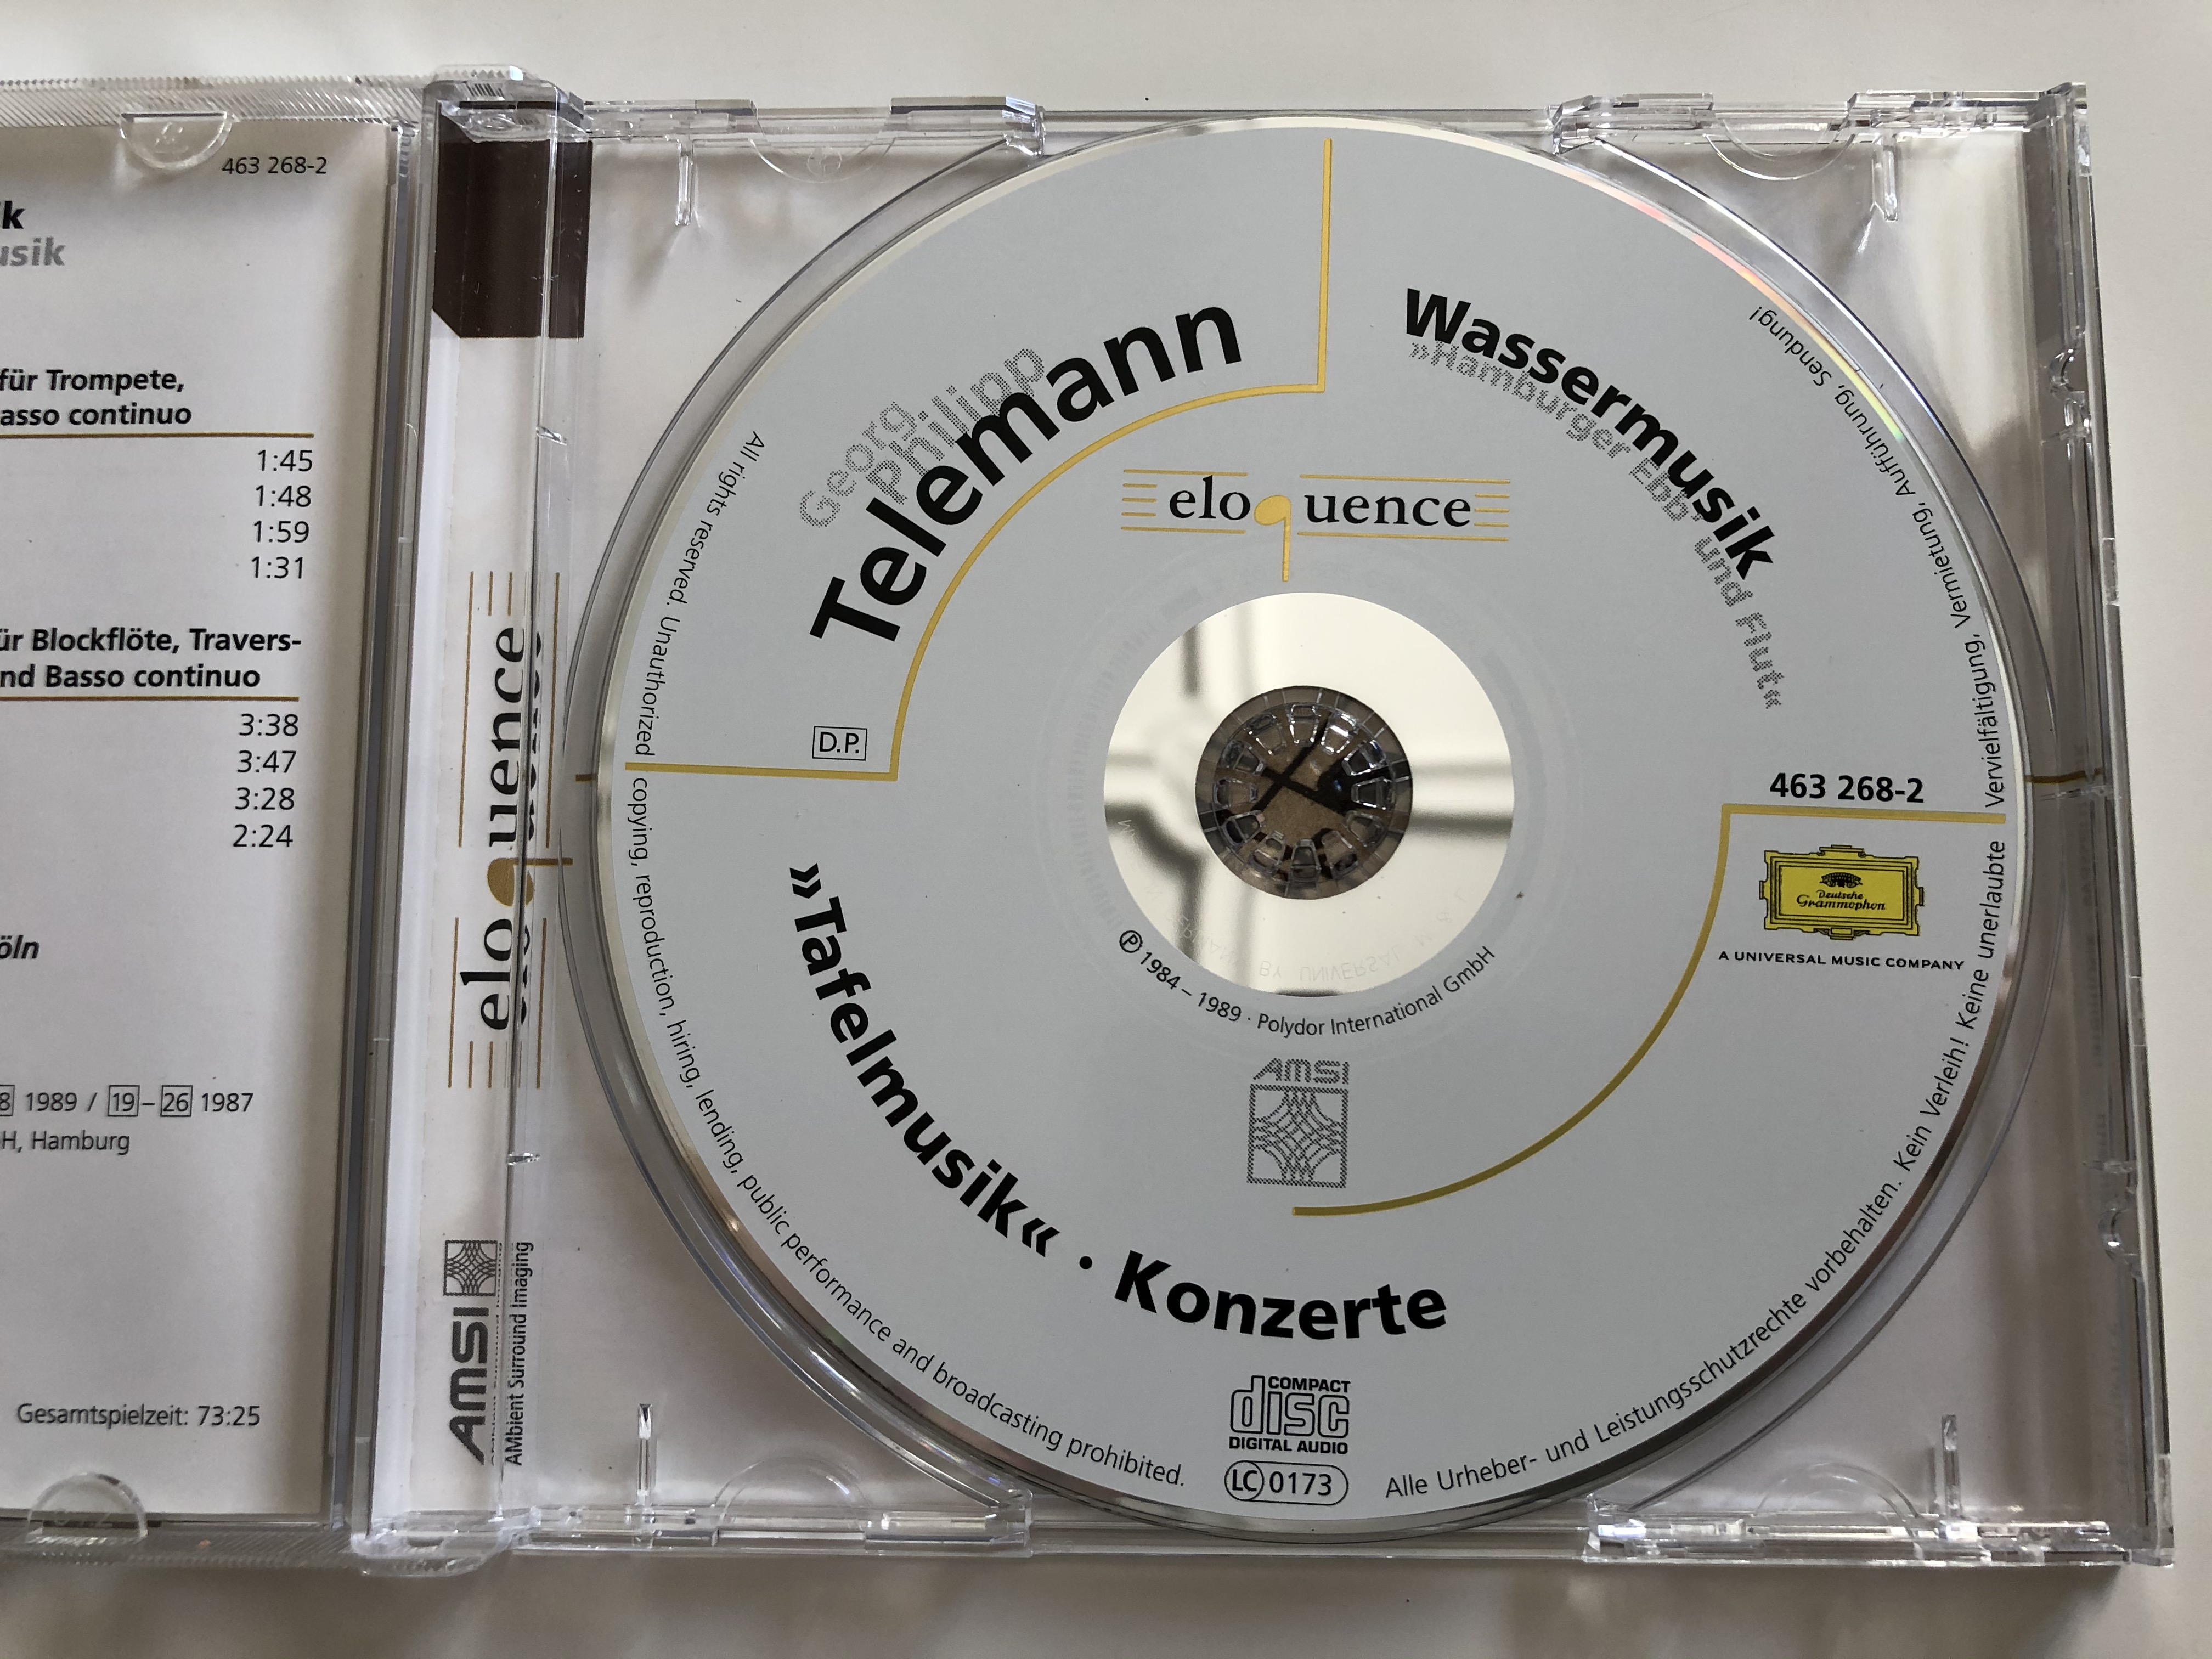 georg-philipp-telemann-tafelmusik-wassermusik-musica-antiqua-k-ln-reinhard-goebel-deutsche-grammophon-audio-cd-463-268-2-3-.jpg